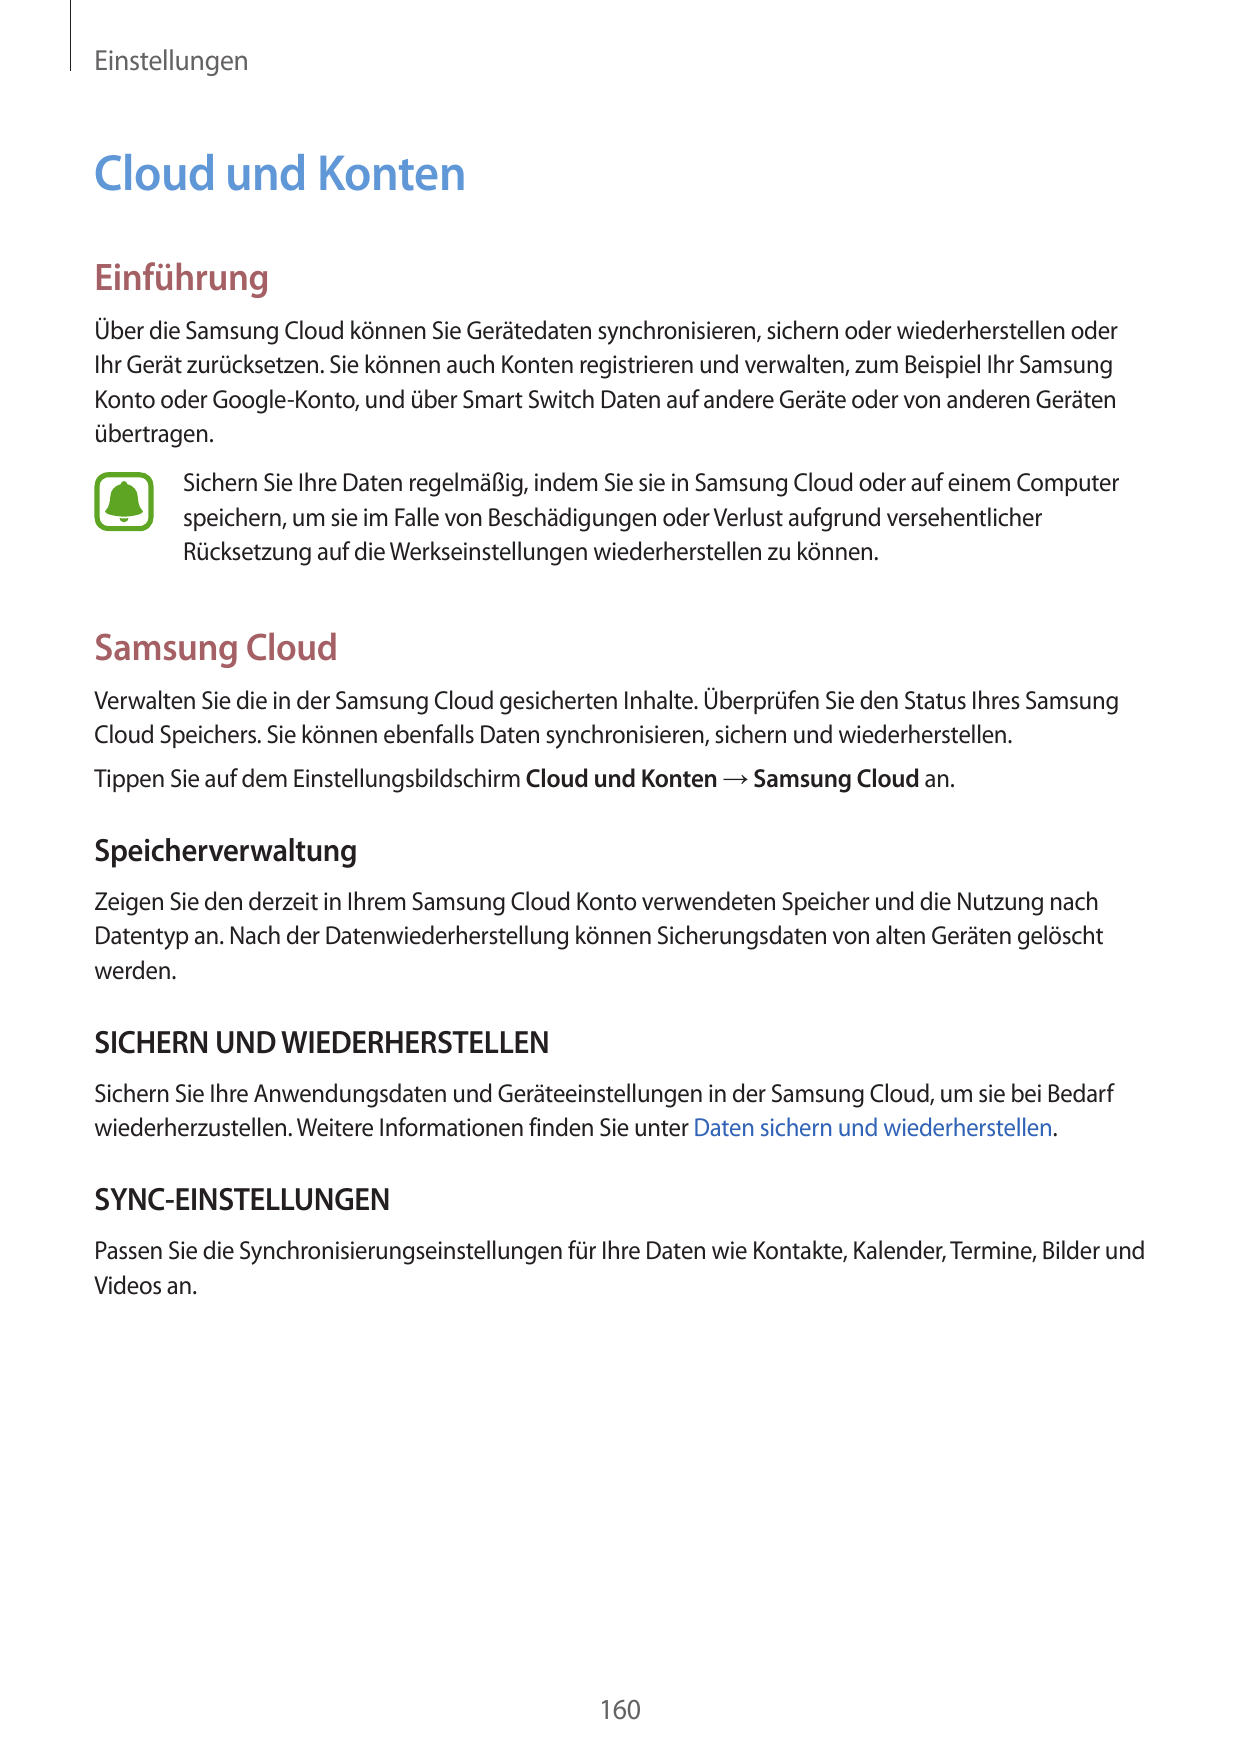 EinstellungenCloud und KontenEinführungÜber die Samsung Cloud können Sie Gerätedaten synchronisieren, sichern oder wiederherstel